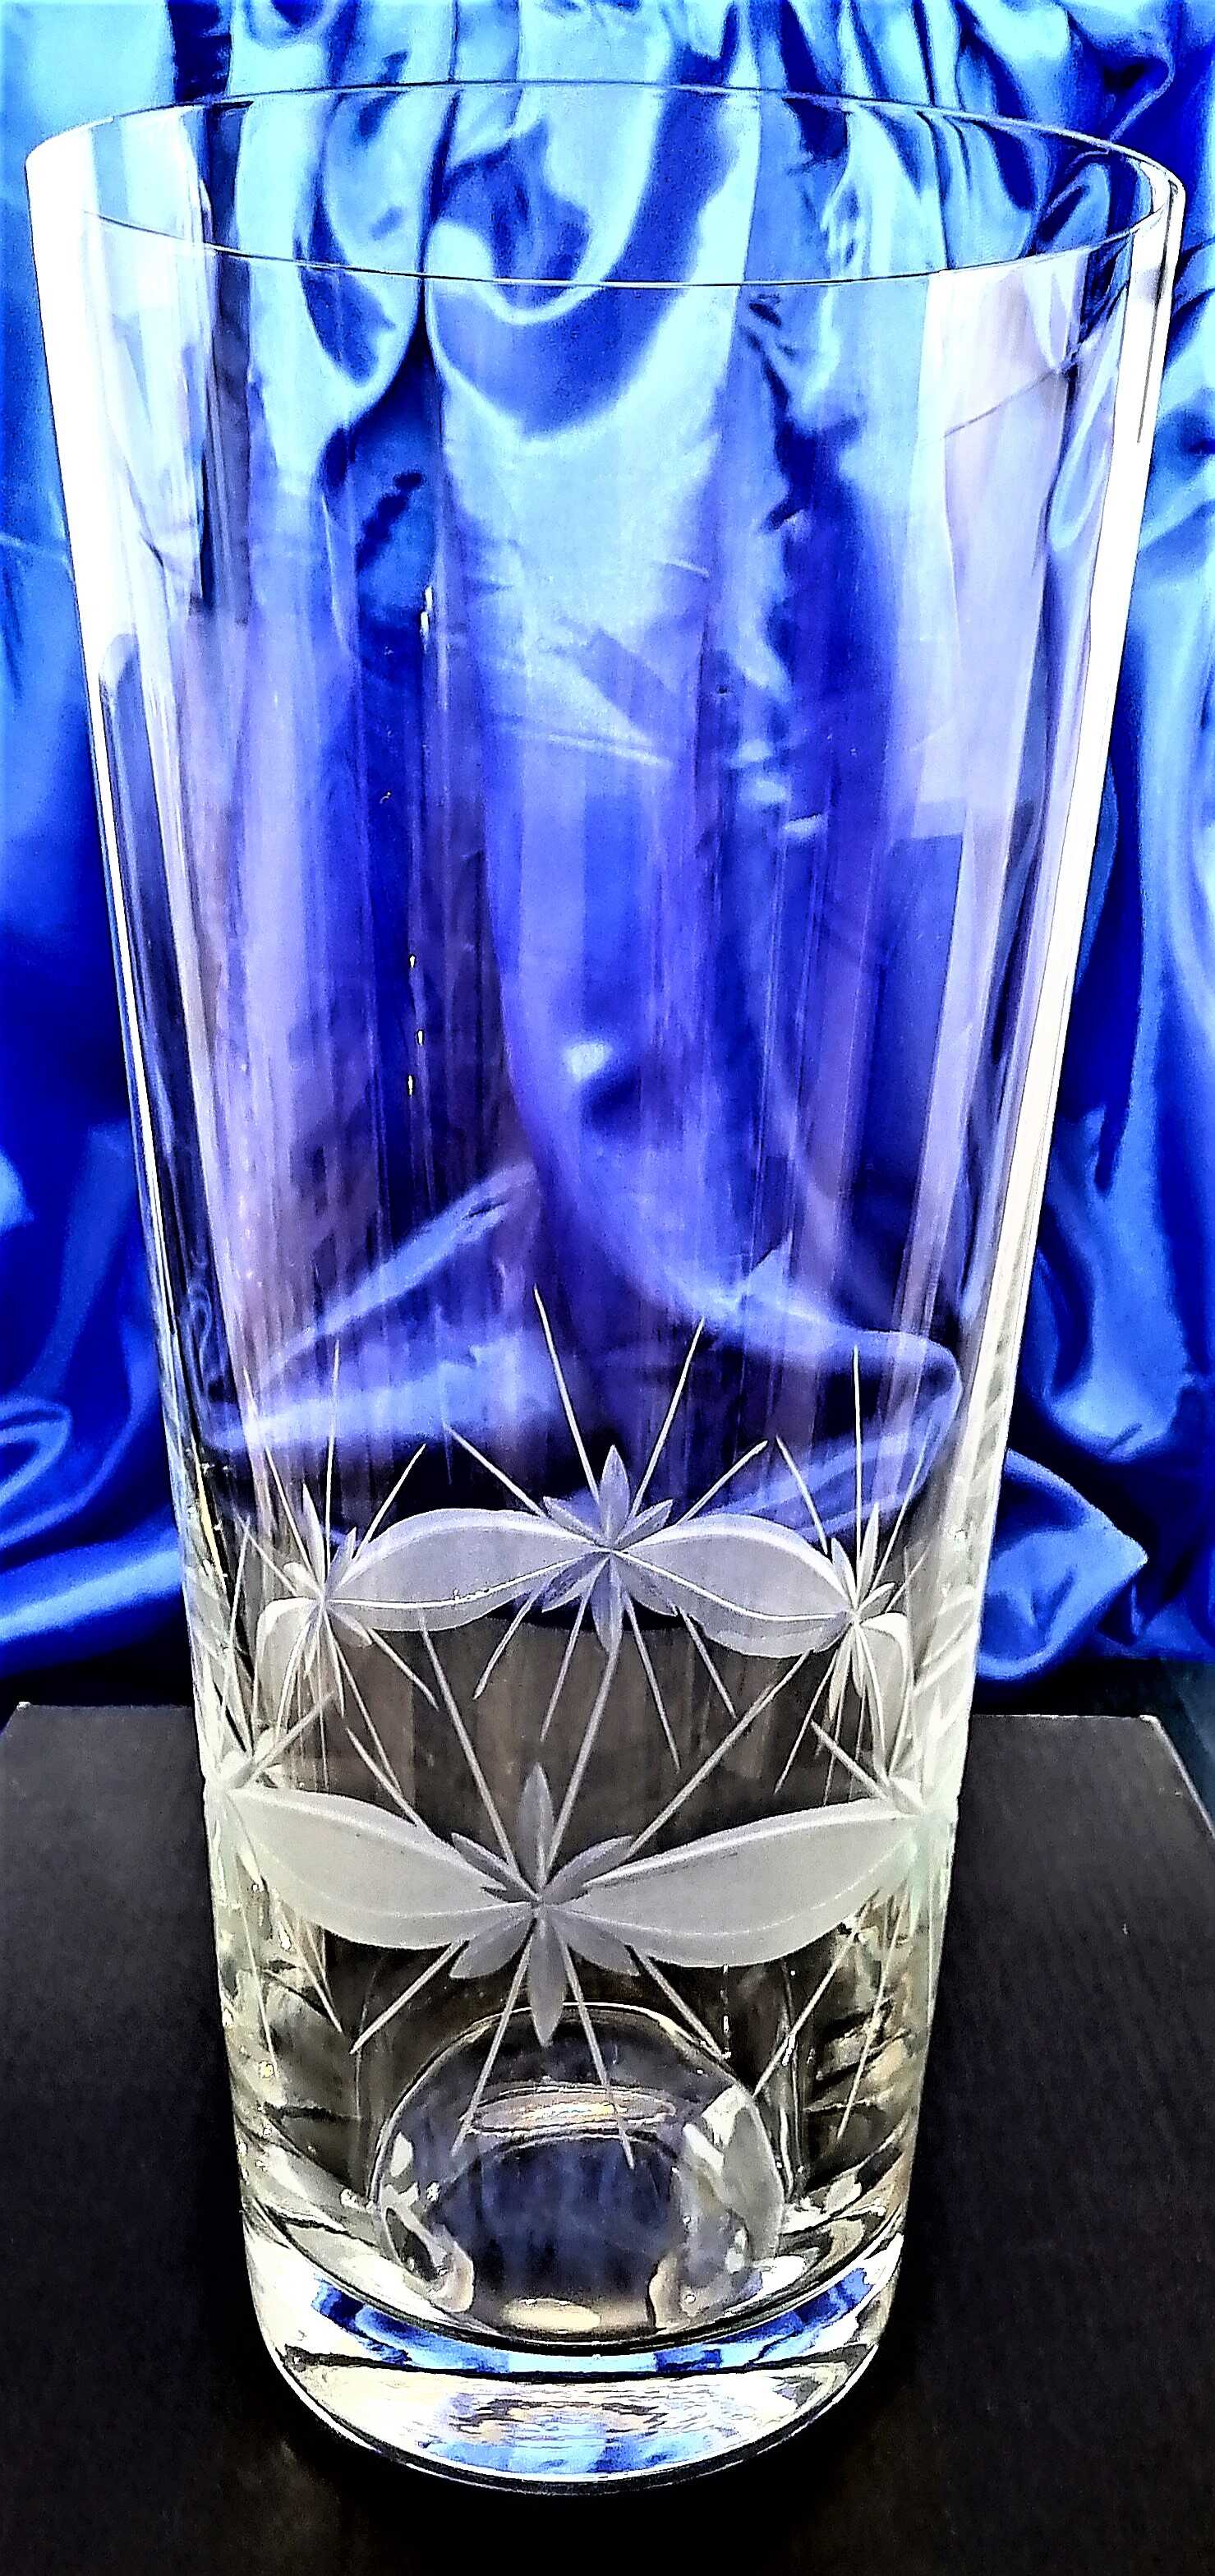 Vase Kristallglas Hand geschliffen Kante WA-1137 250 x 125 mm 1 Stück .